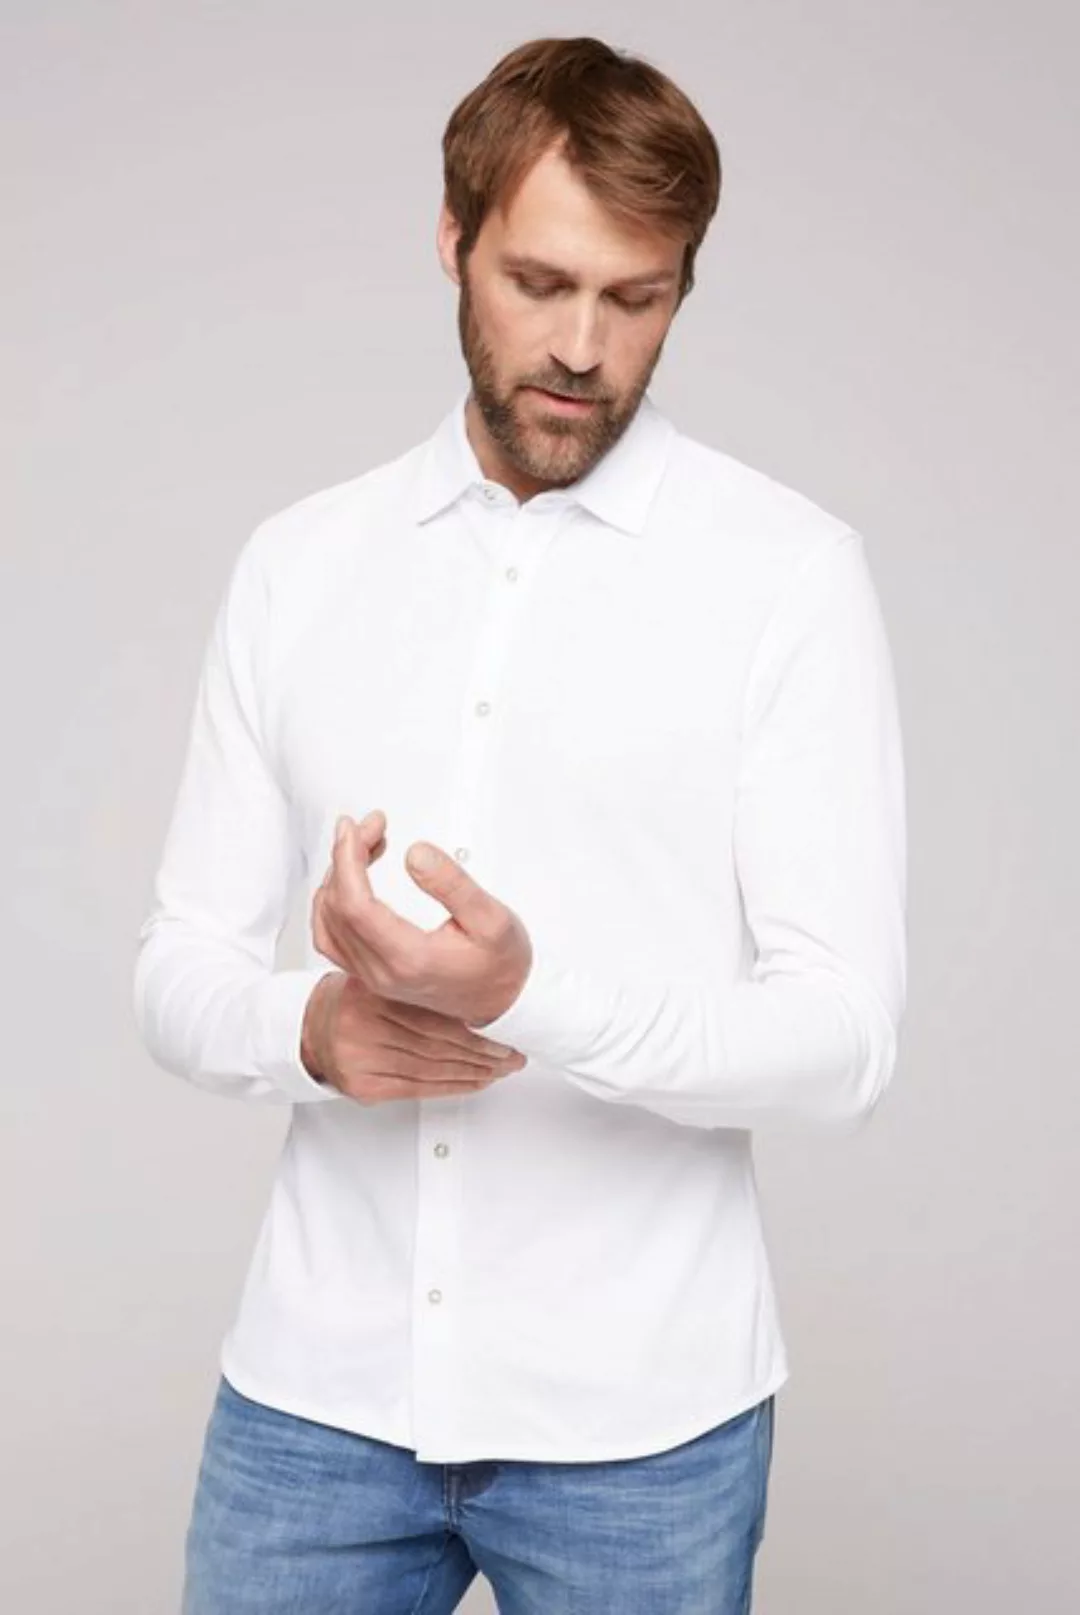 CAMP DAVID Langarmhemd aus Baumwolle günstig online kaufen